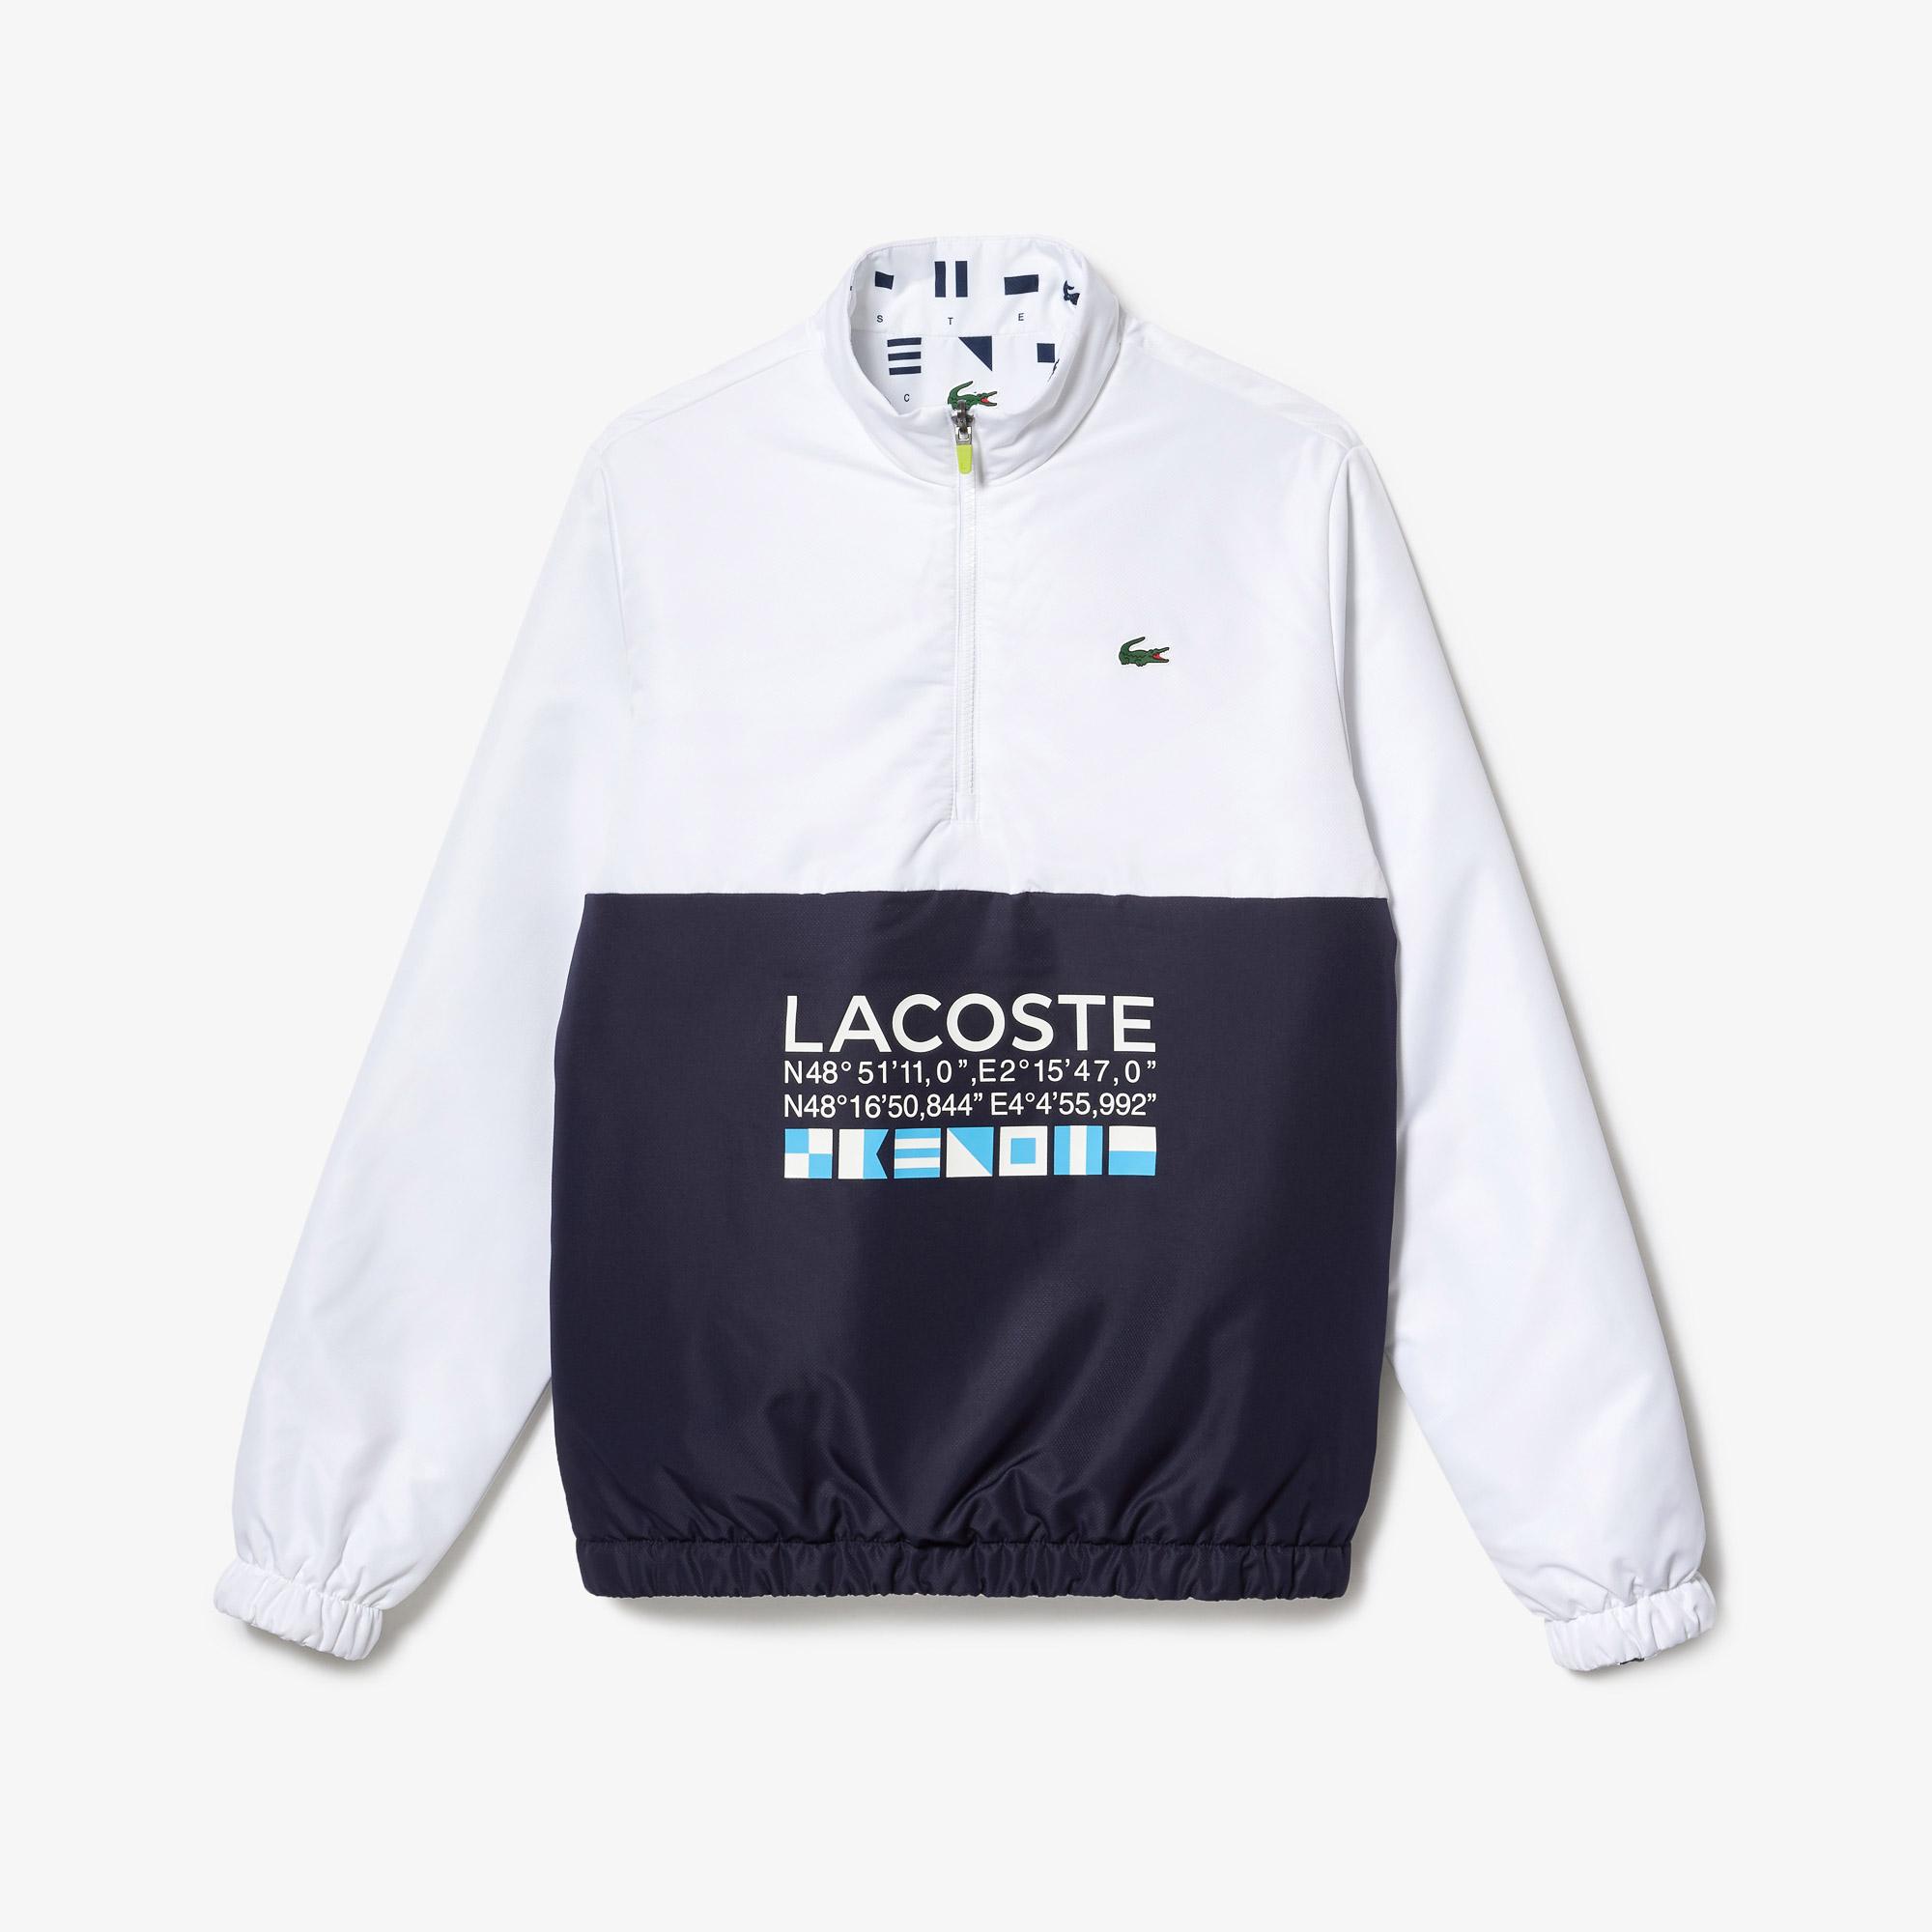 Lacoste Men's  SPORT Reversible Water-Repellent Tennis Jacket